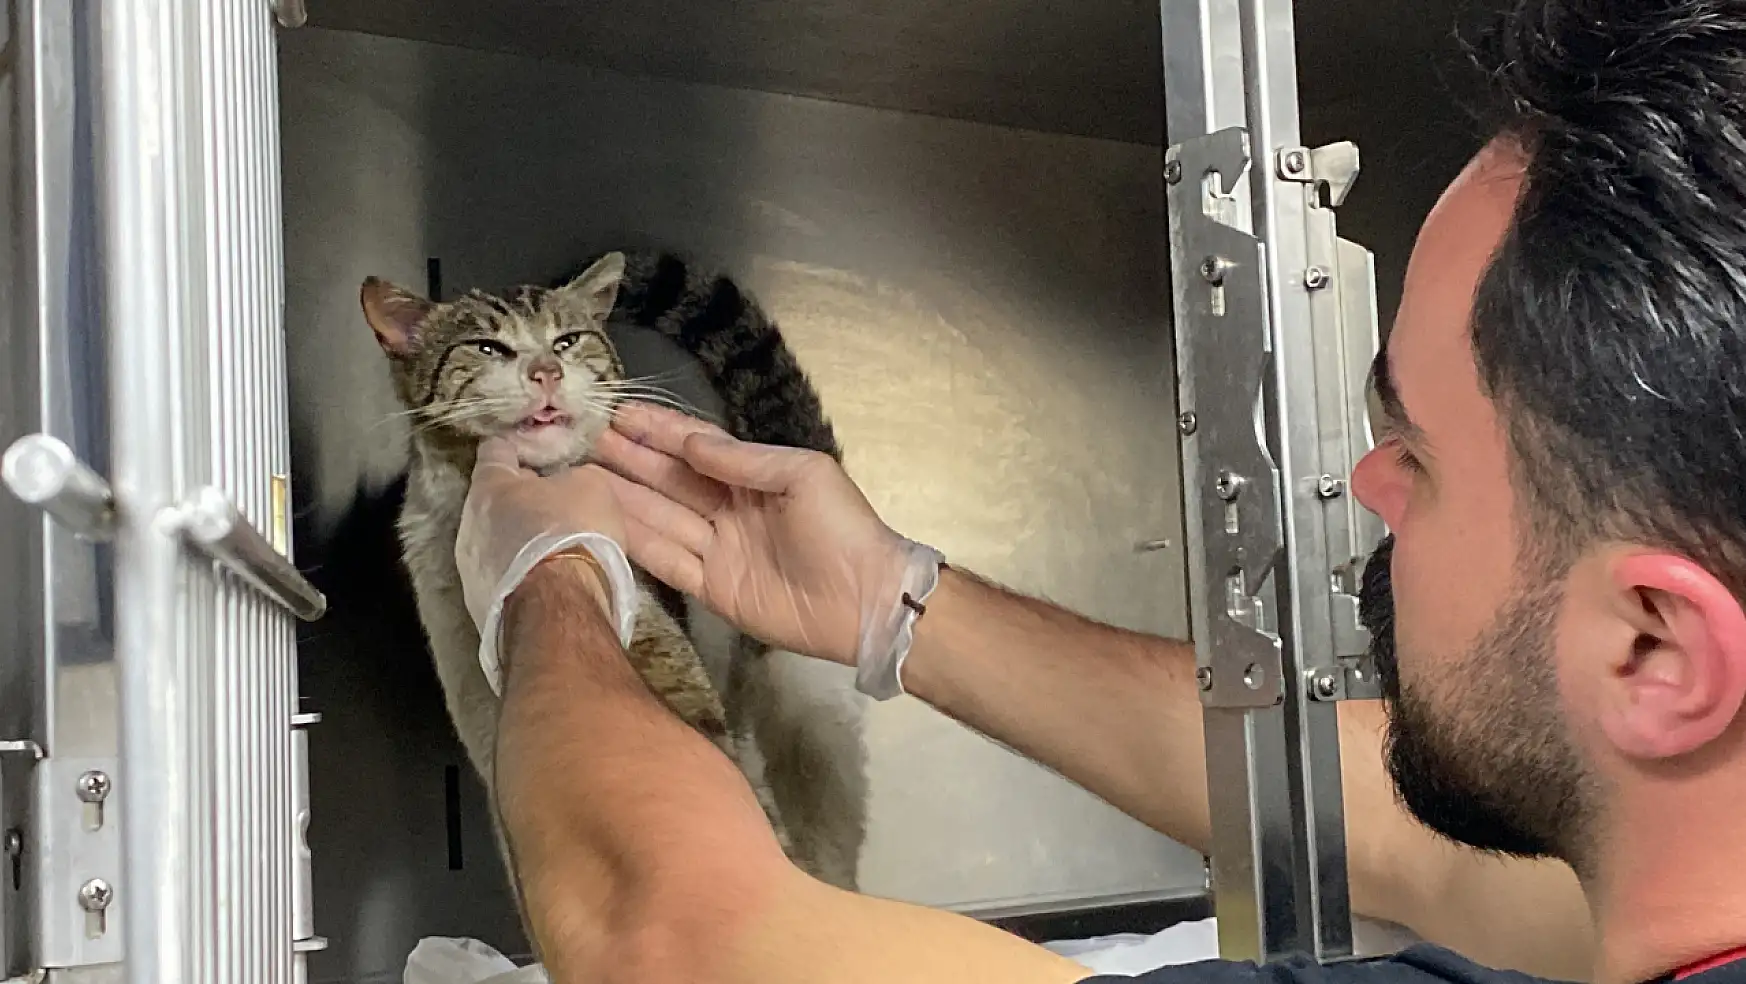 Hasta kedi, kulağında tümörle veteriner hekimine gitti